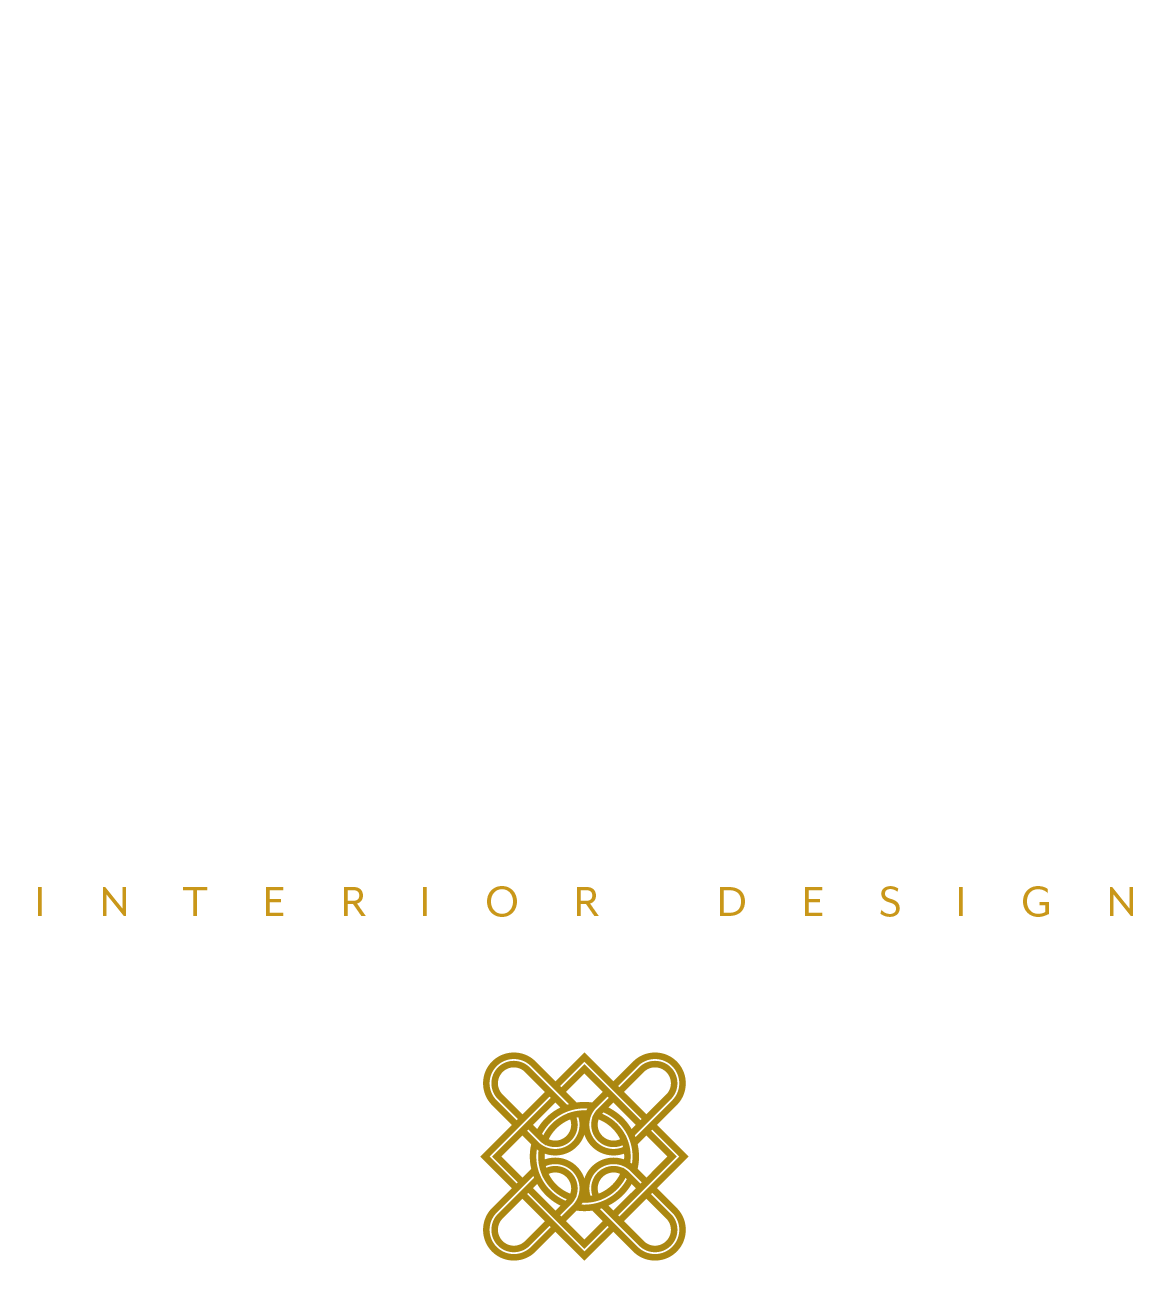 Odette Hayer